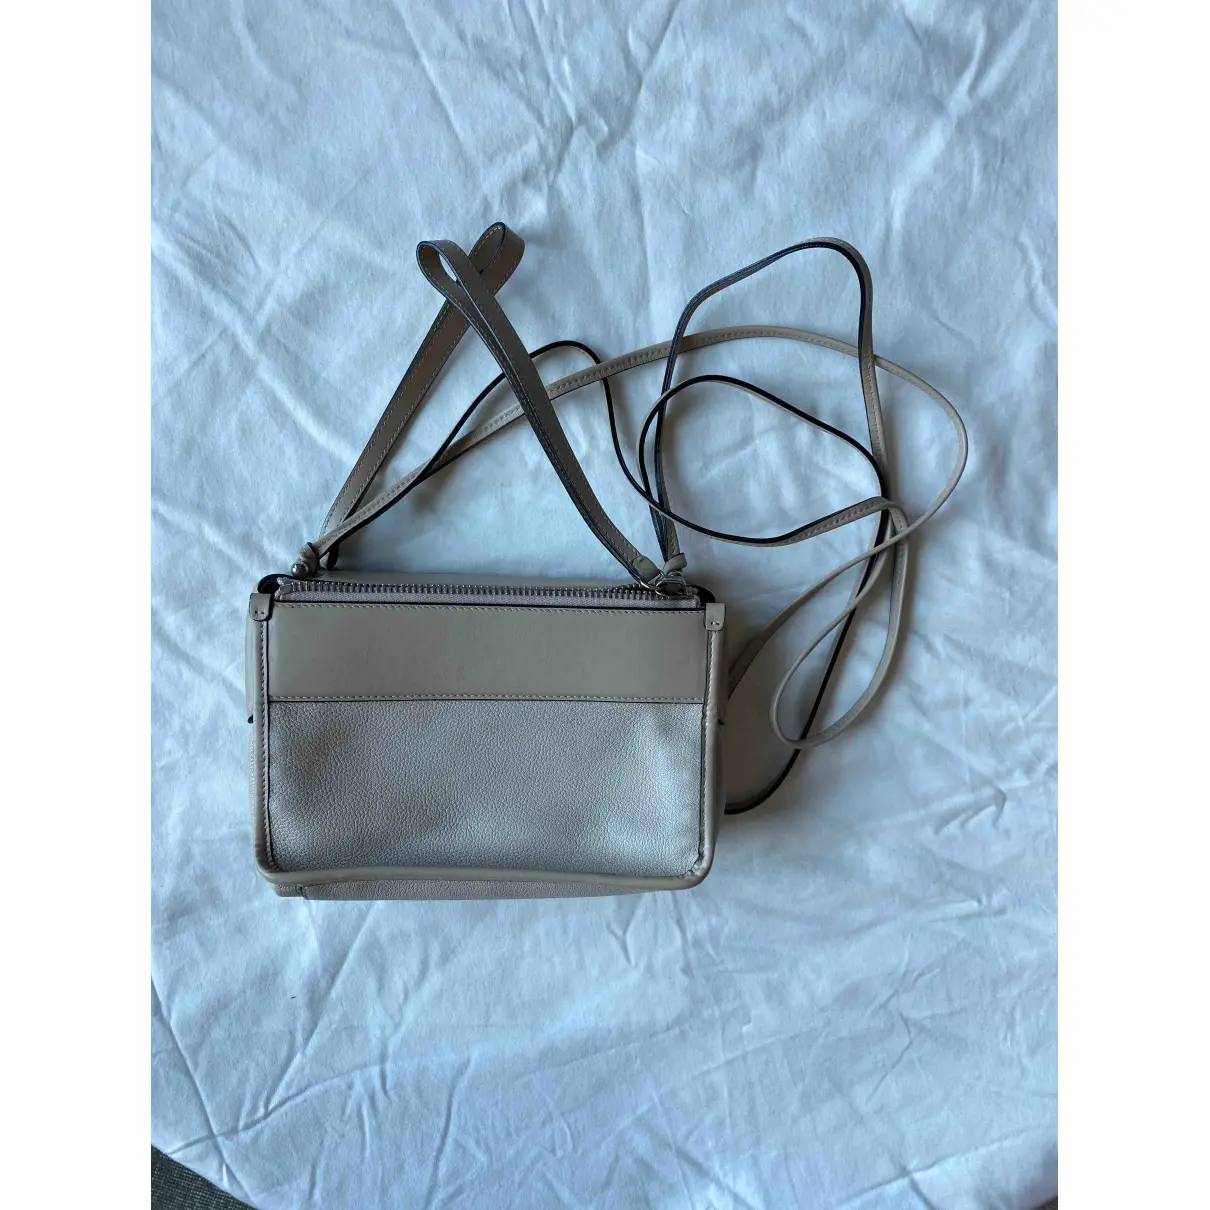 Buy Proenza Schouler Leather handbag online